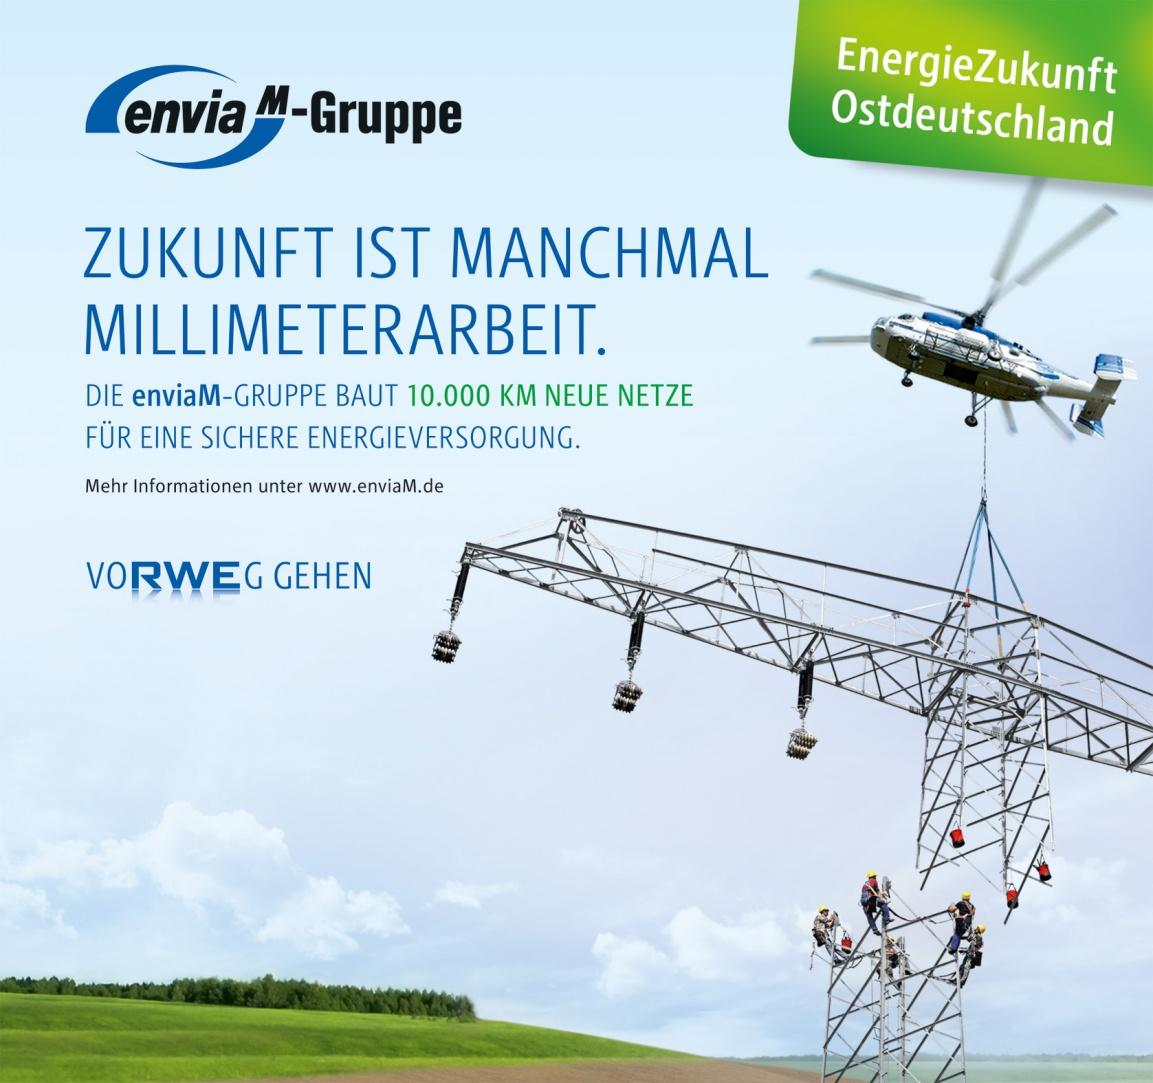 enviam-gruppe gestaltet die Energiewende in Ostdeutschland aktiv mit. Die enviam-gruppe... bekennt sich zur Energiewende.